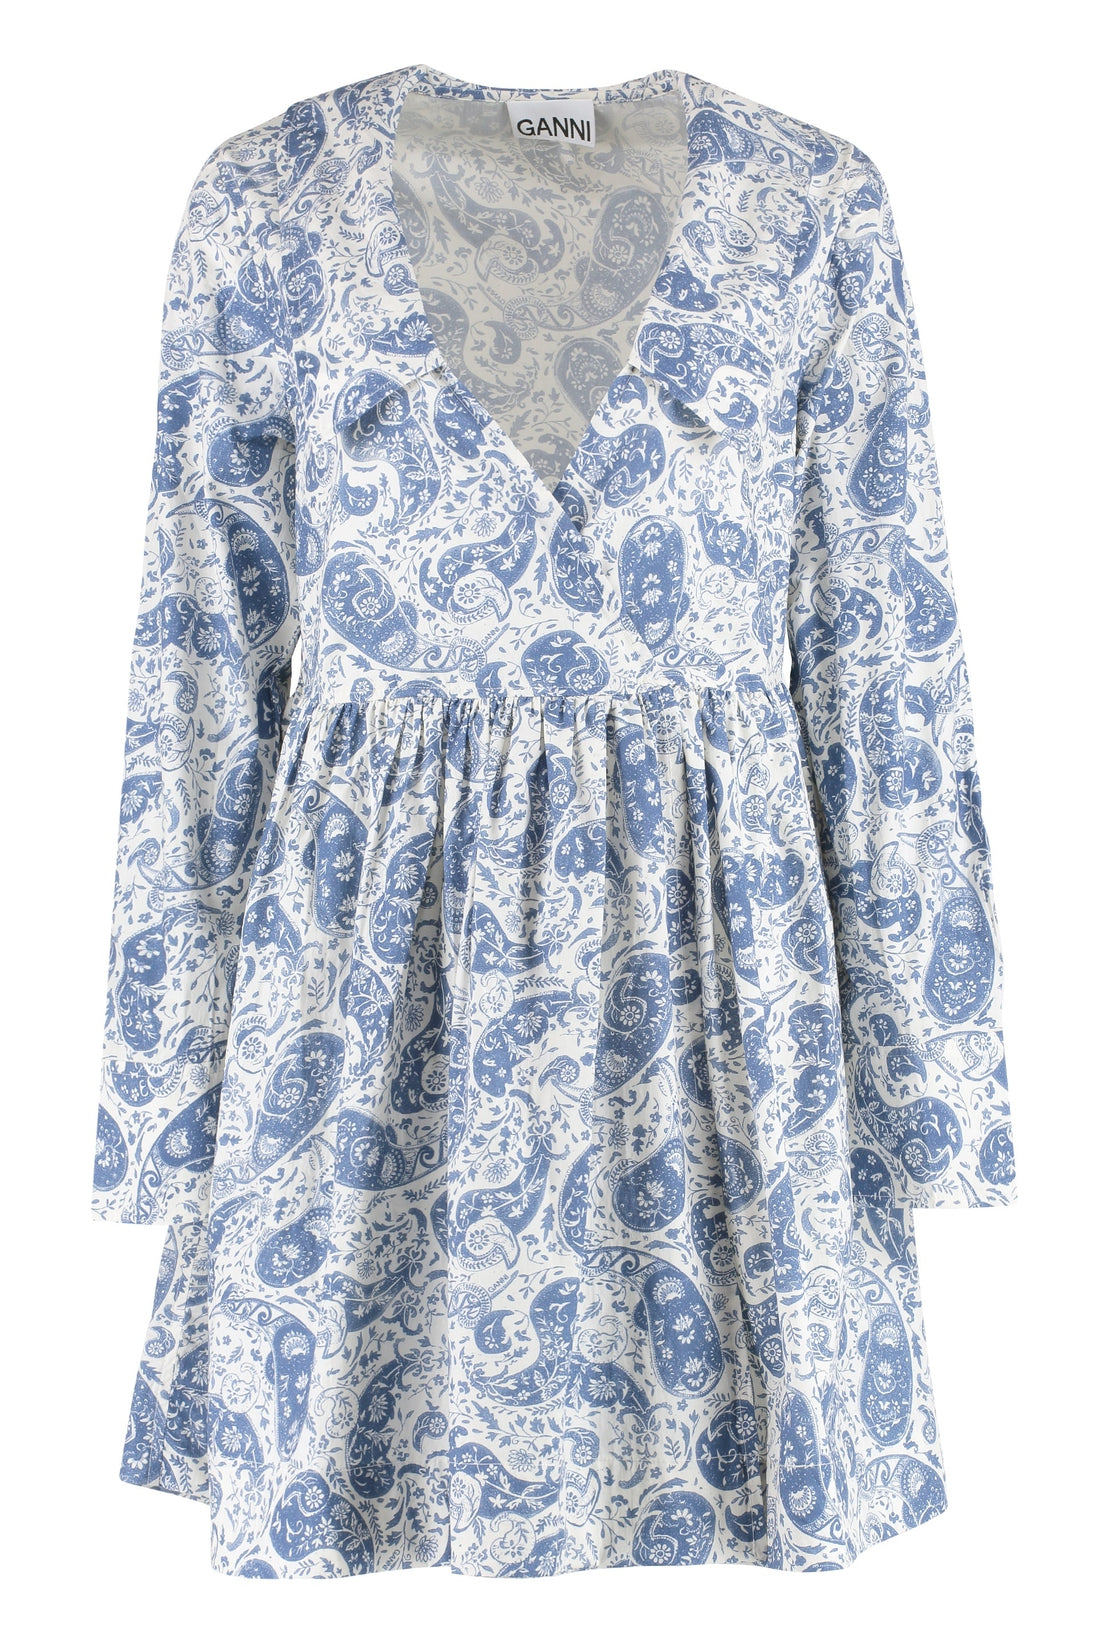 GANNI-OUTLET-SALE-Printed cotton dress-ARCHIVIST